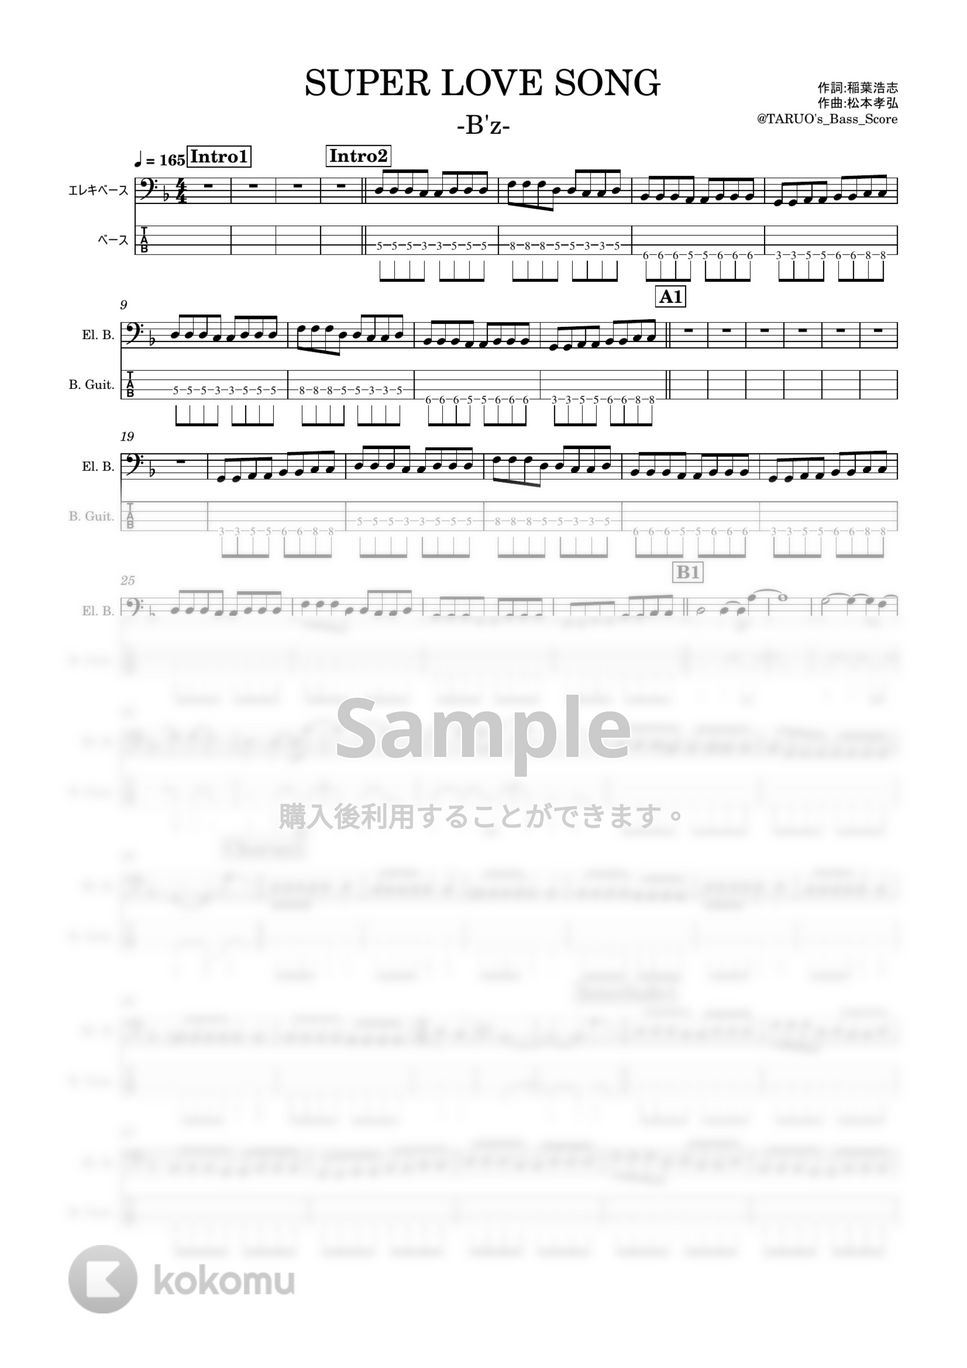 B'z - SUPER LOVE SONG (ベース / TAB) by TARUO's_Bass_Score